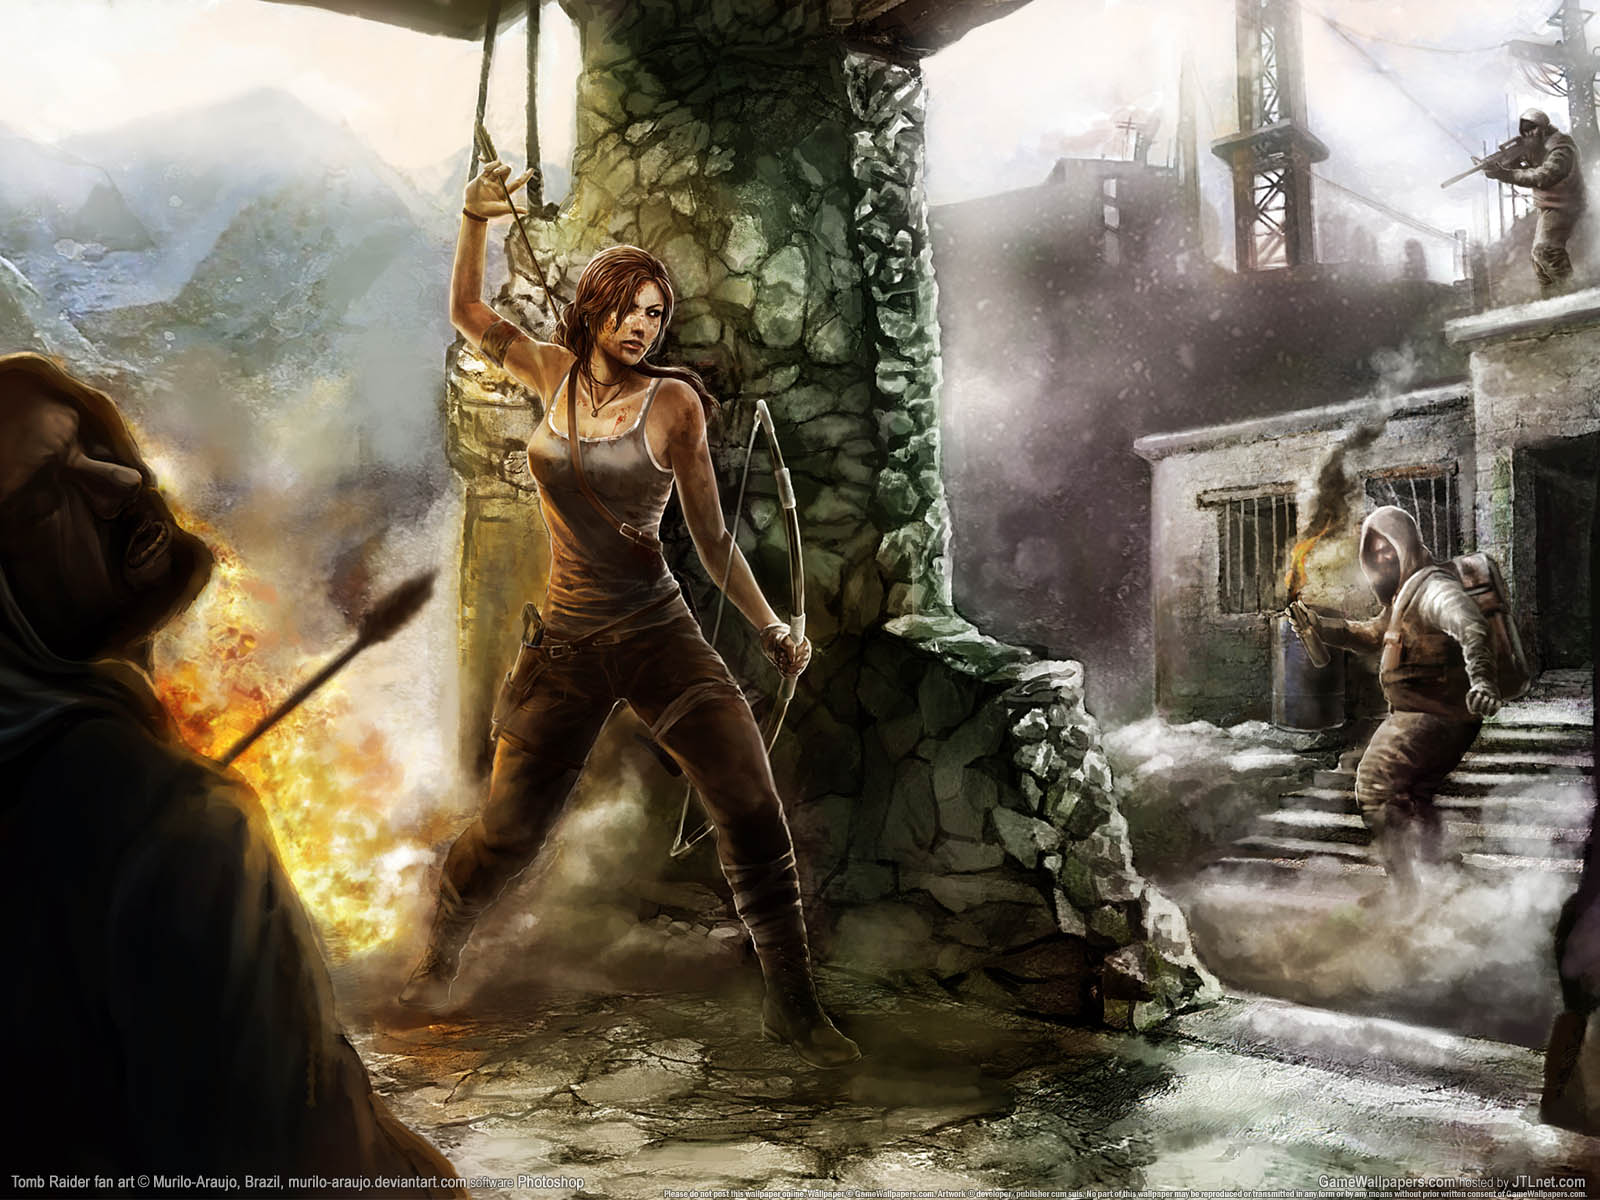 Tomb Raider fan art fond d'cran 02 1600x1200